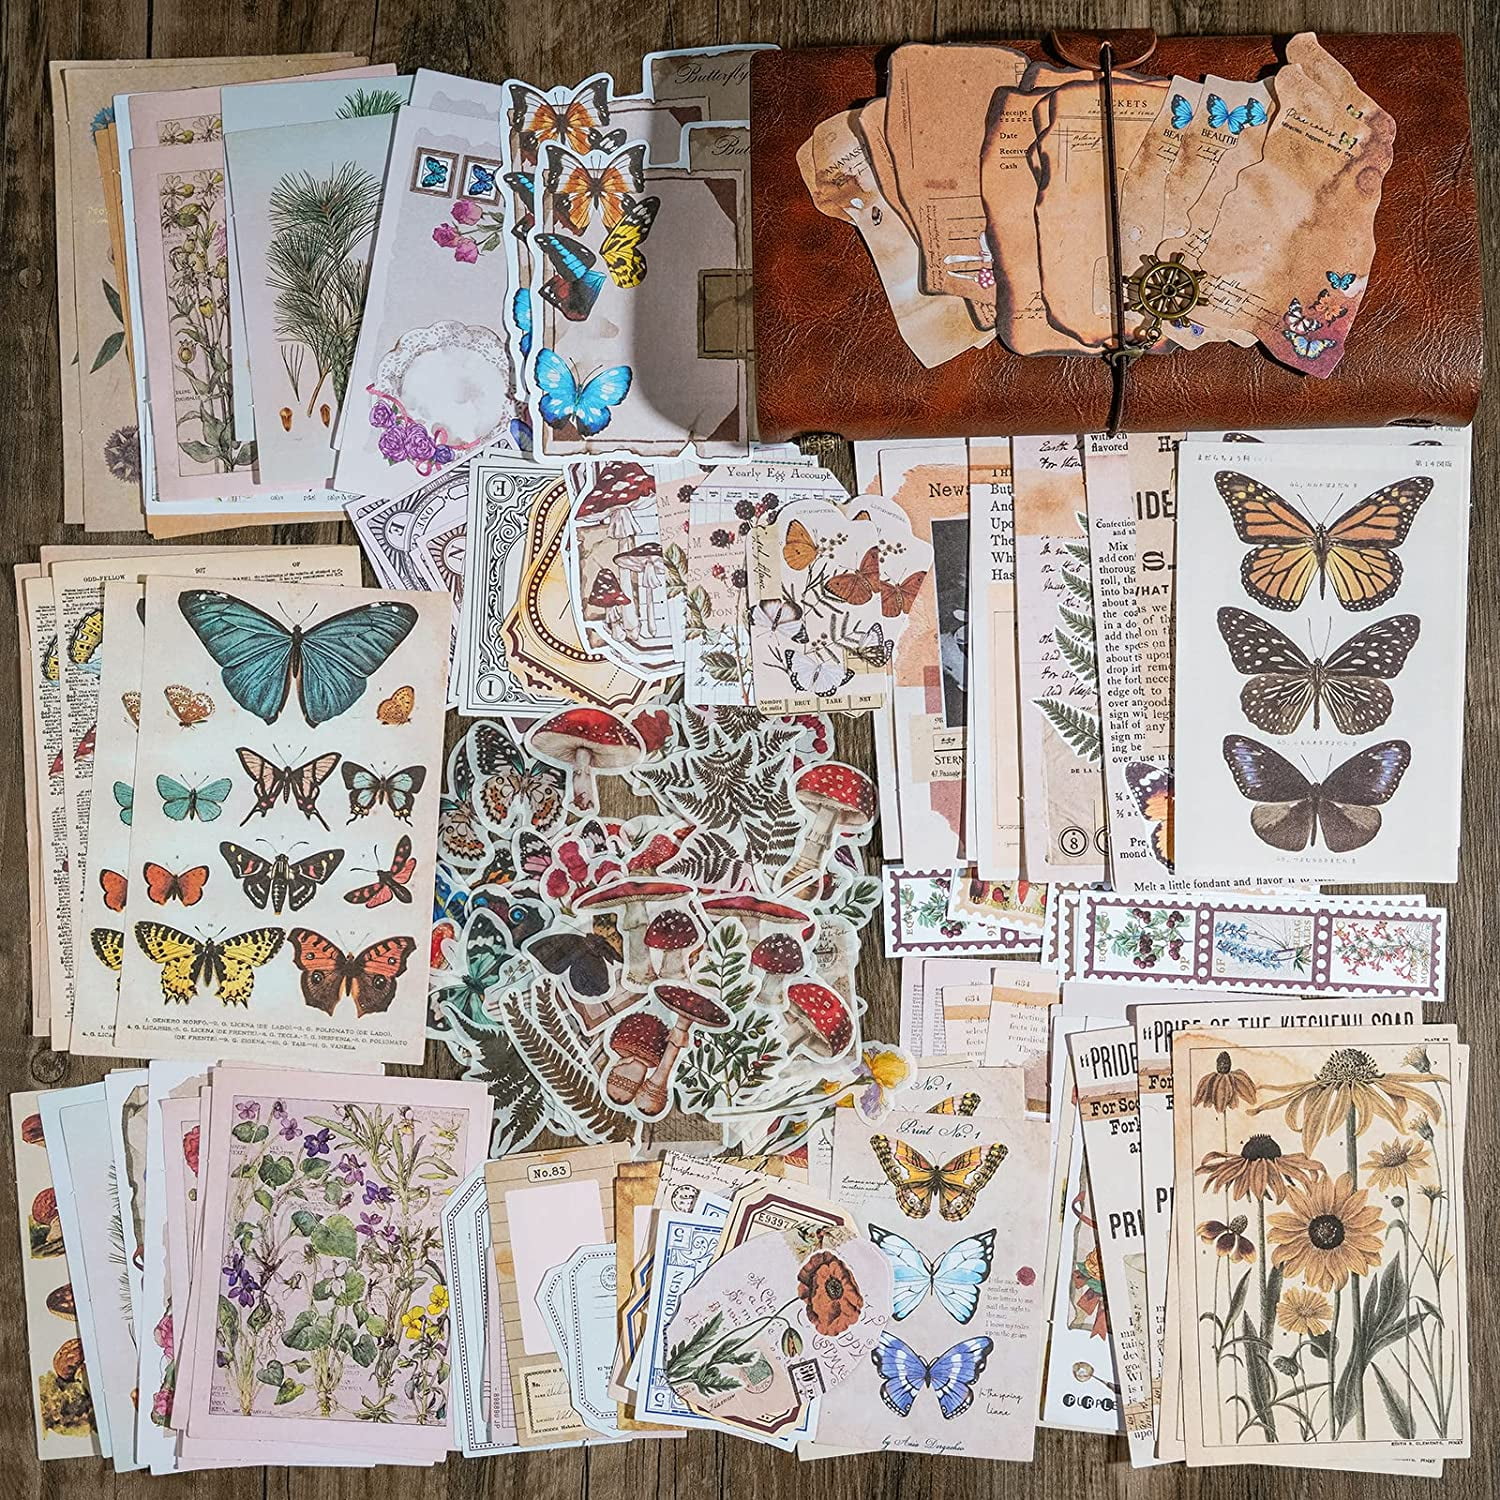 Harnico Vintage Scrapbook Supplies Kit Scrapbooking Stuff for Art  Journaling Scrap Book Stickers Scrapbooking Materials Junk Journal Planners  DIY